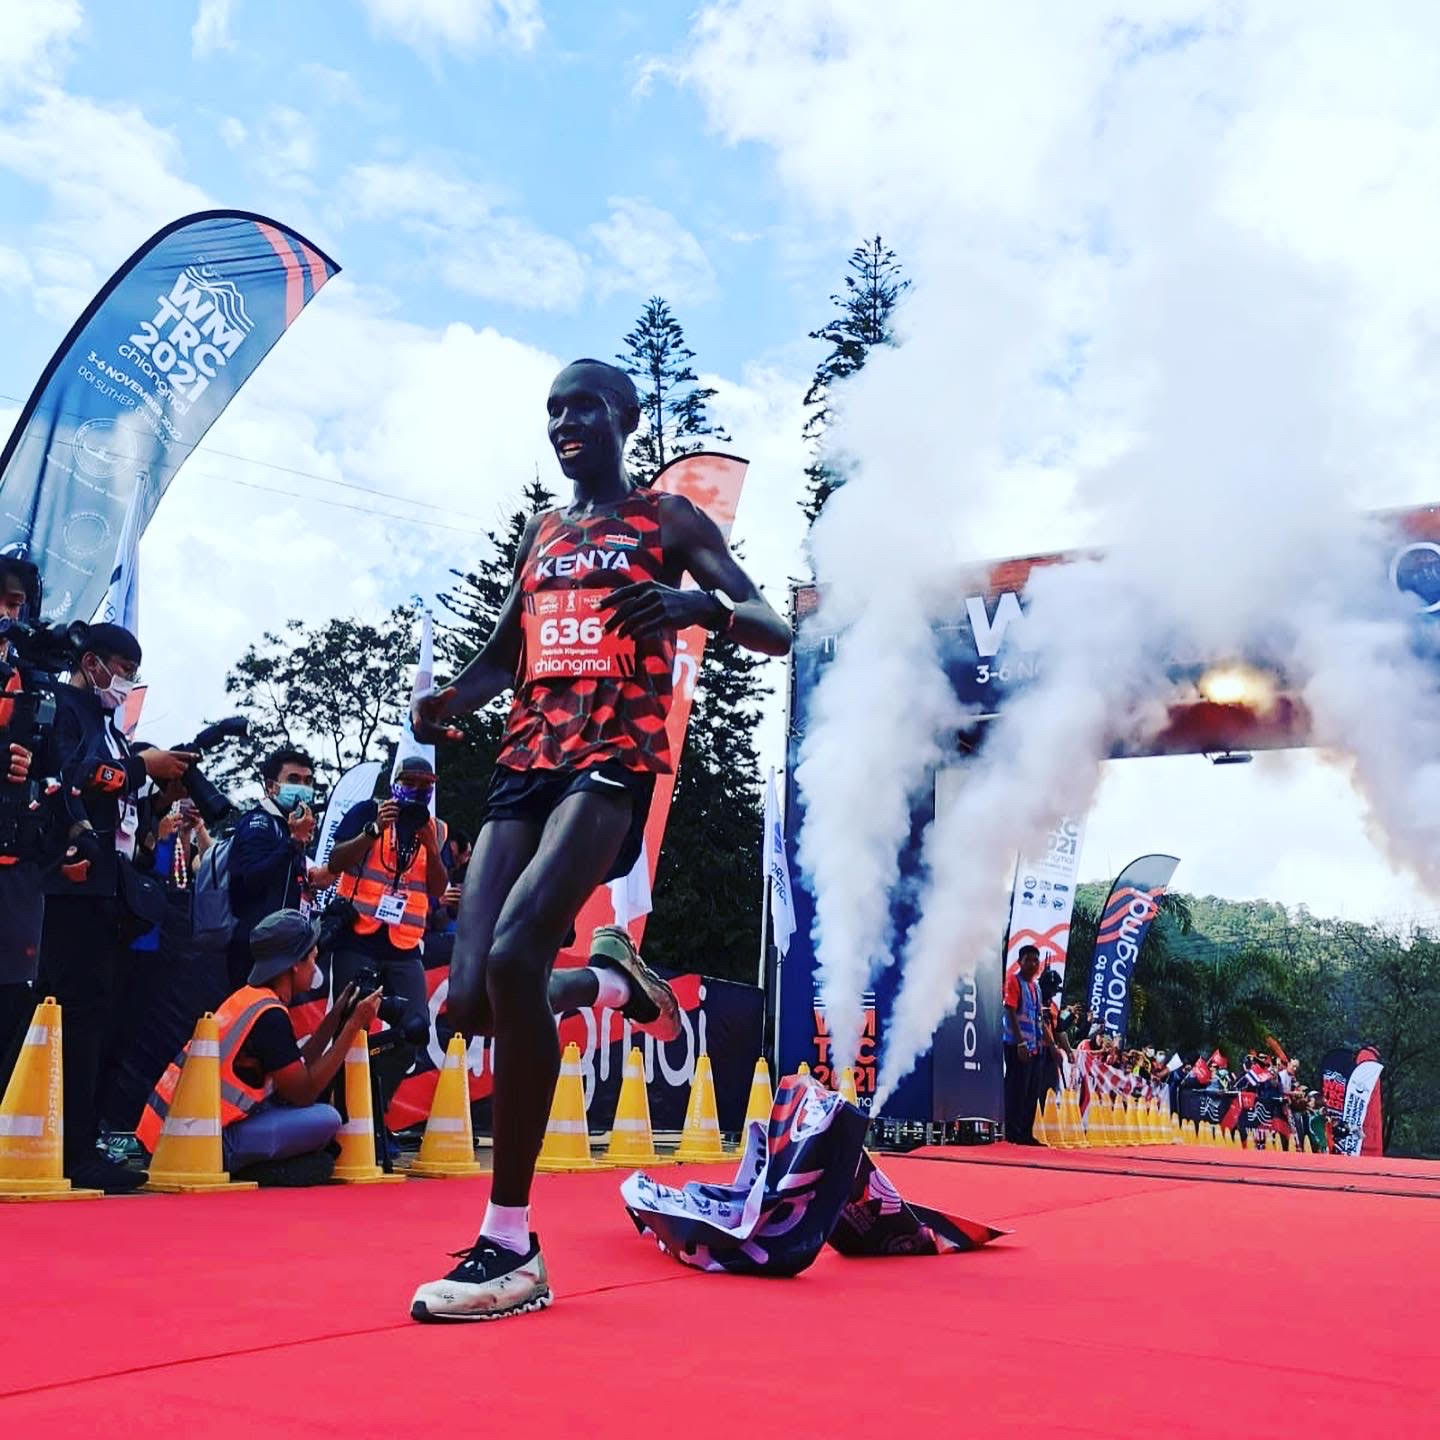 เชียงใหม่ - ปอดเหล็กเคนยา ประเดิมคว้าแชมป์ วิ่งเทรลภูเขาโลก ครั้งที่ 1